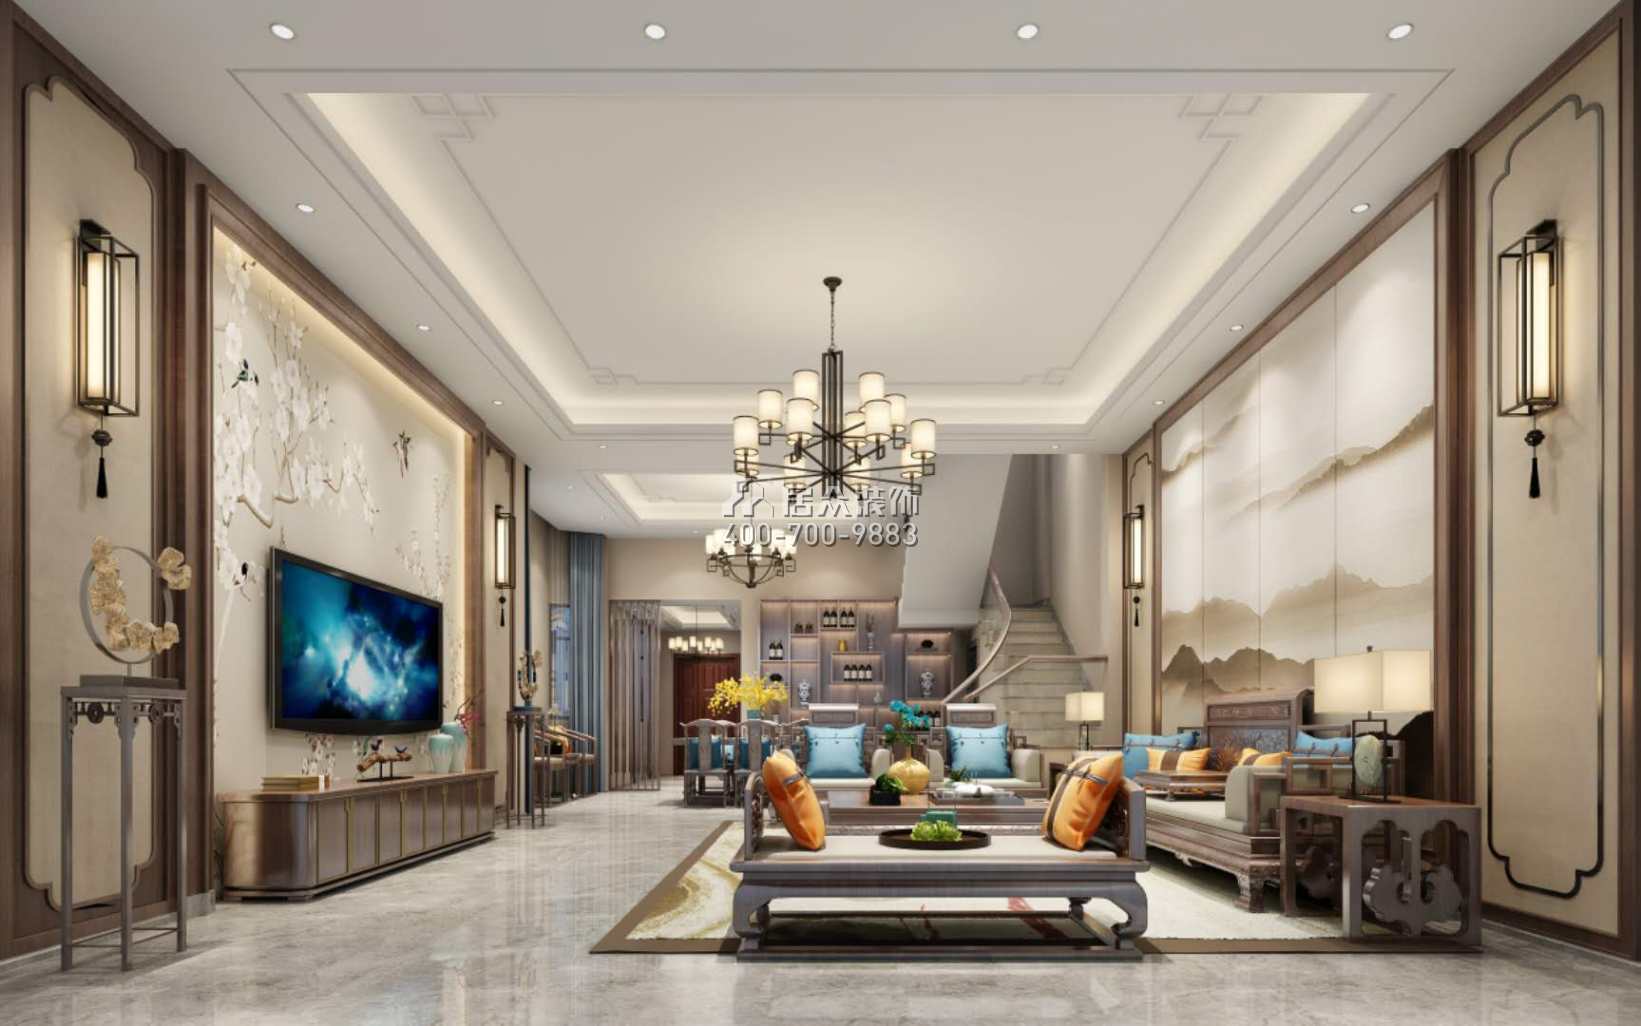 海逸豪庭尚都280平方米中式风格别墅户型客厅装修效果图